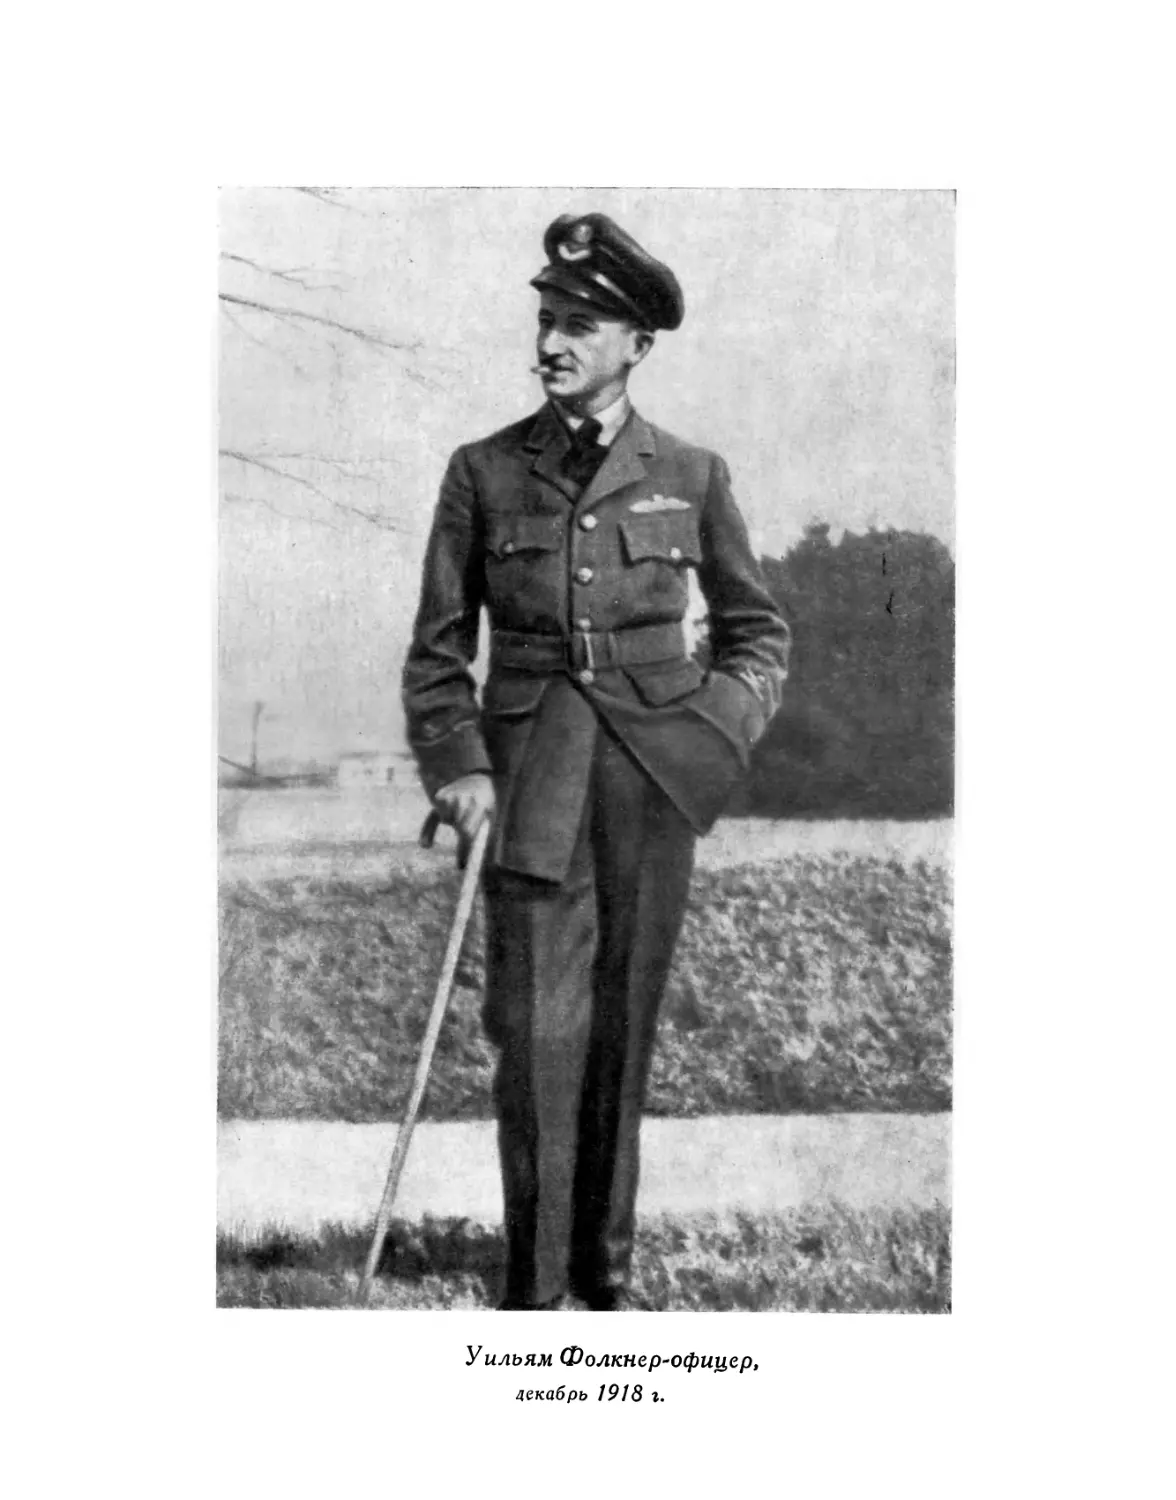 Вклейка. Уильям Фолкнер-офицер. Декабрь 1918 г.